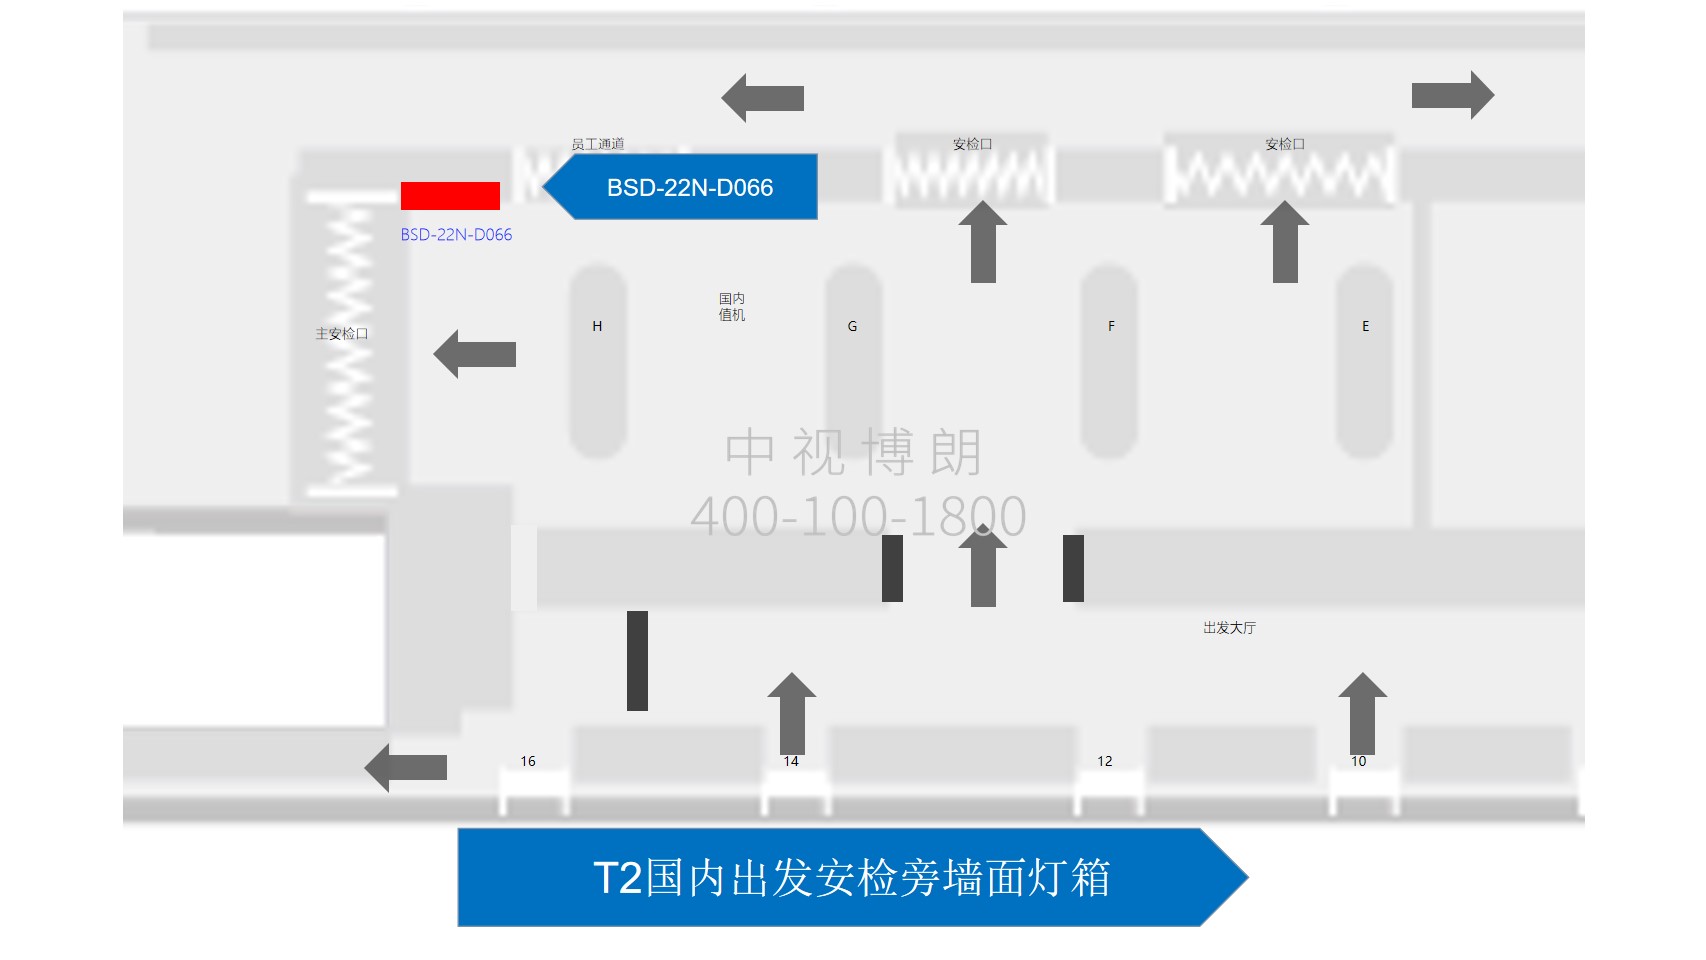 北京首都机场广告-T2国内出发安检旁墙面灯箱位置图